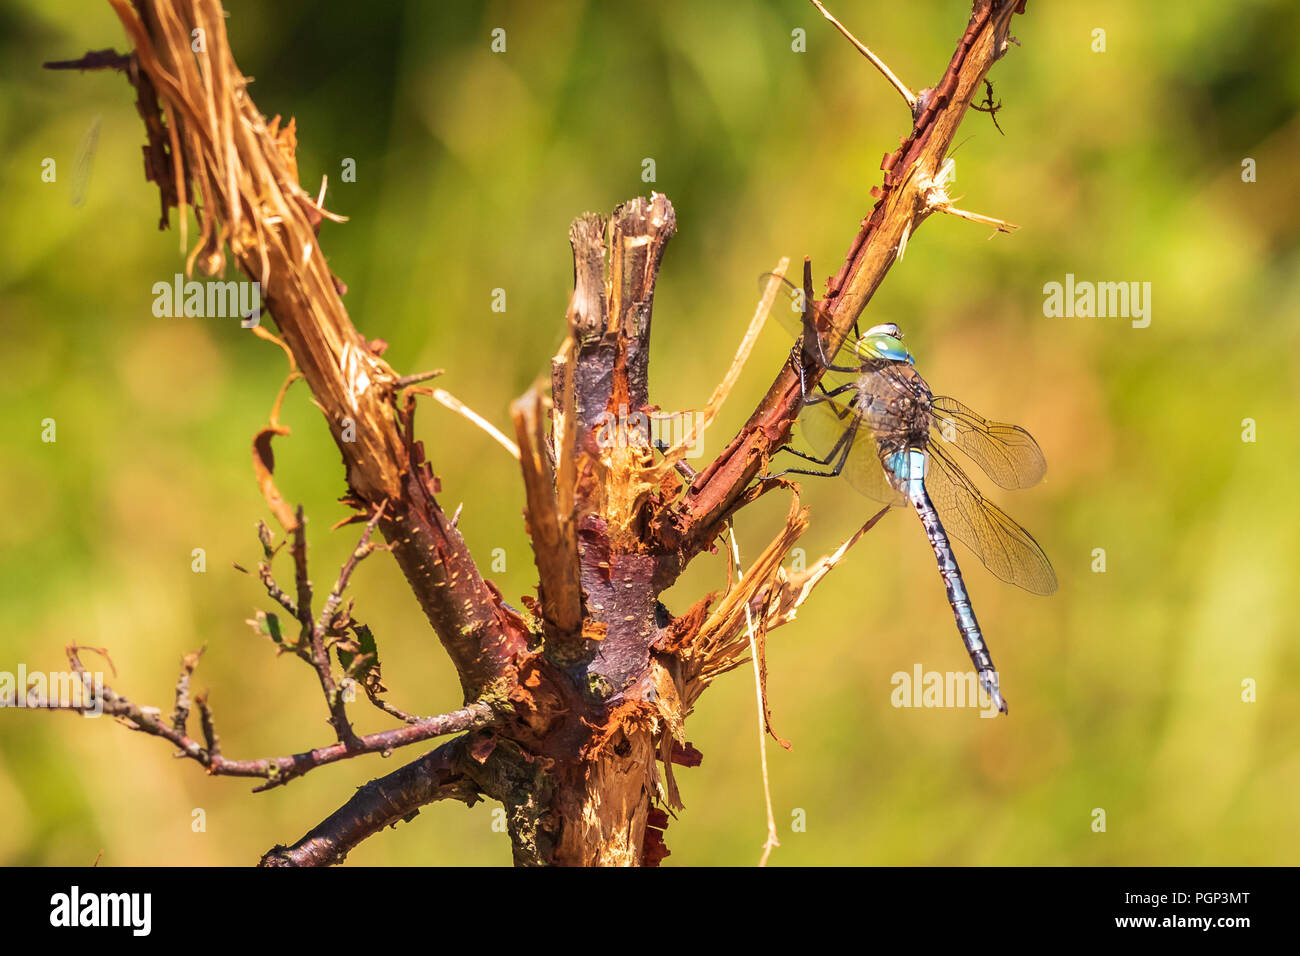 Nahaufnahme von einem geringeren Emperor dragonfly Anax parthenope, ruhend unter Blätter in einem Baum in einem Wald an einem sonnigen Tag. Stockfoto